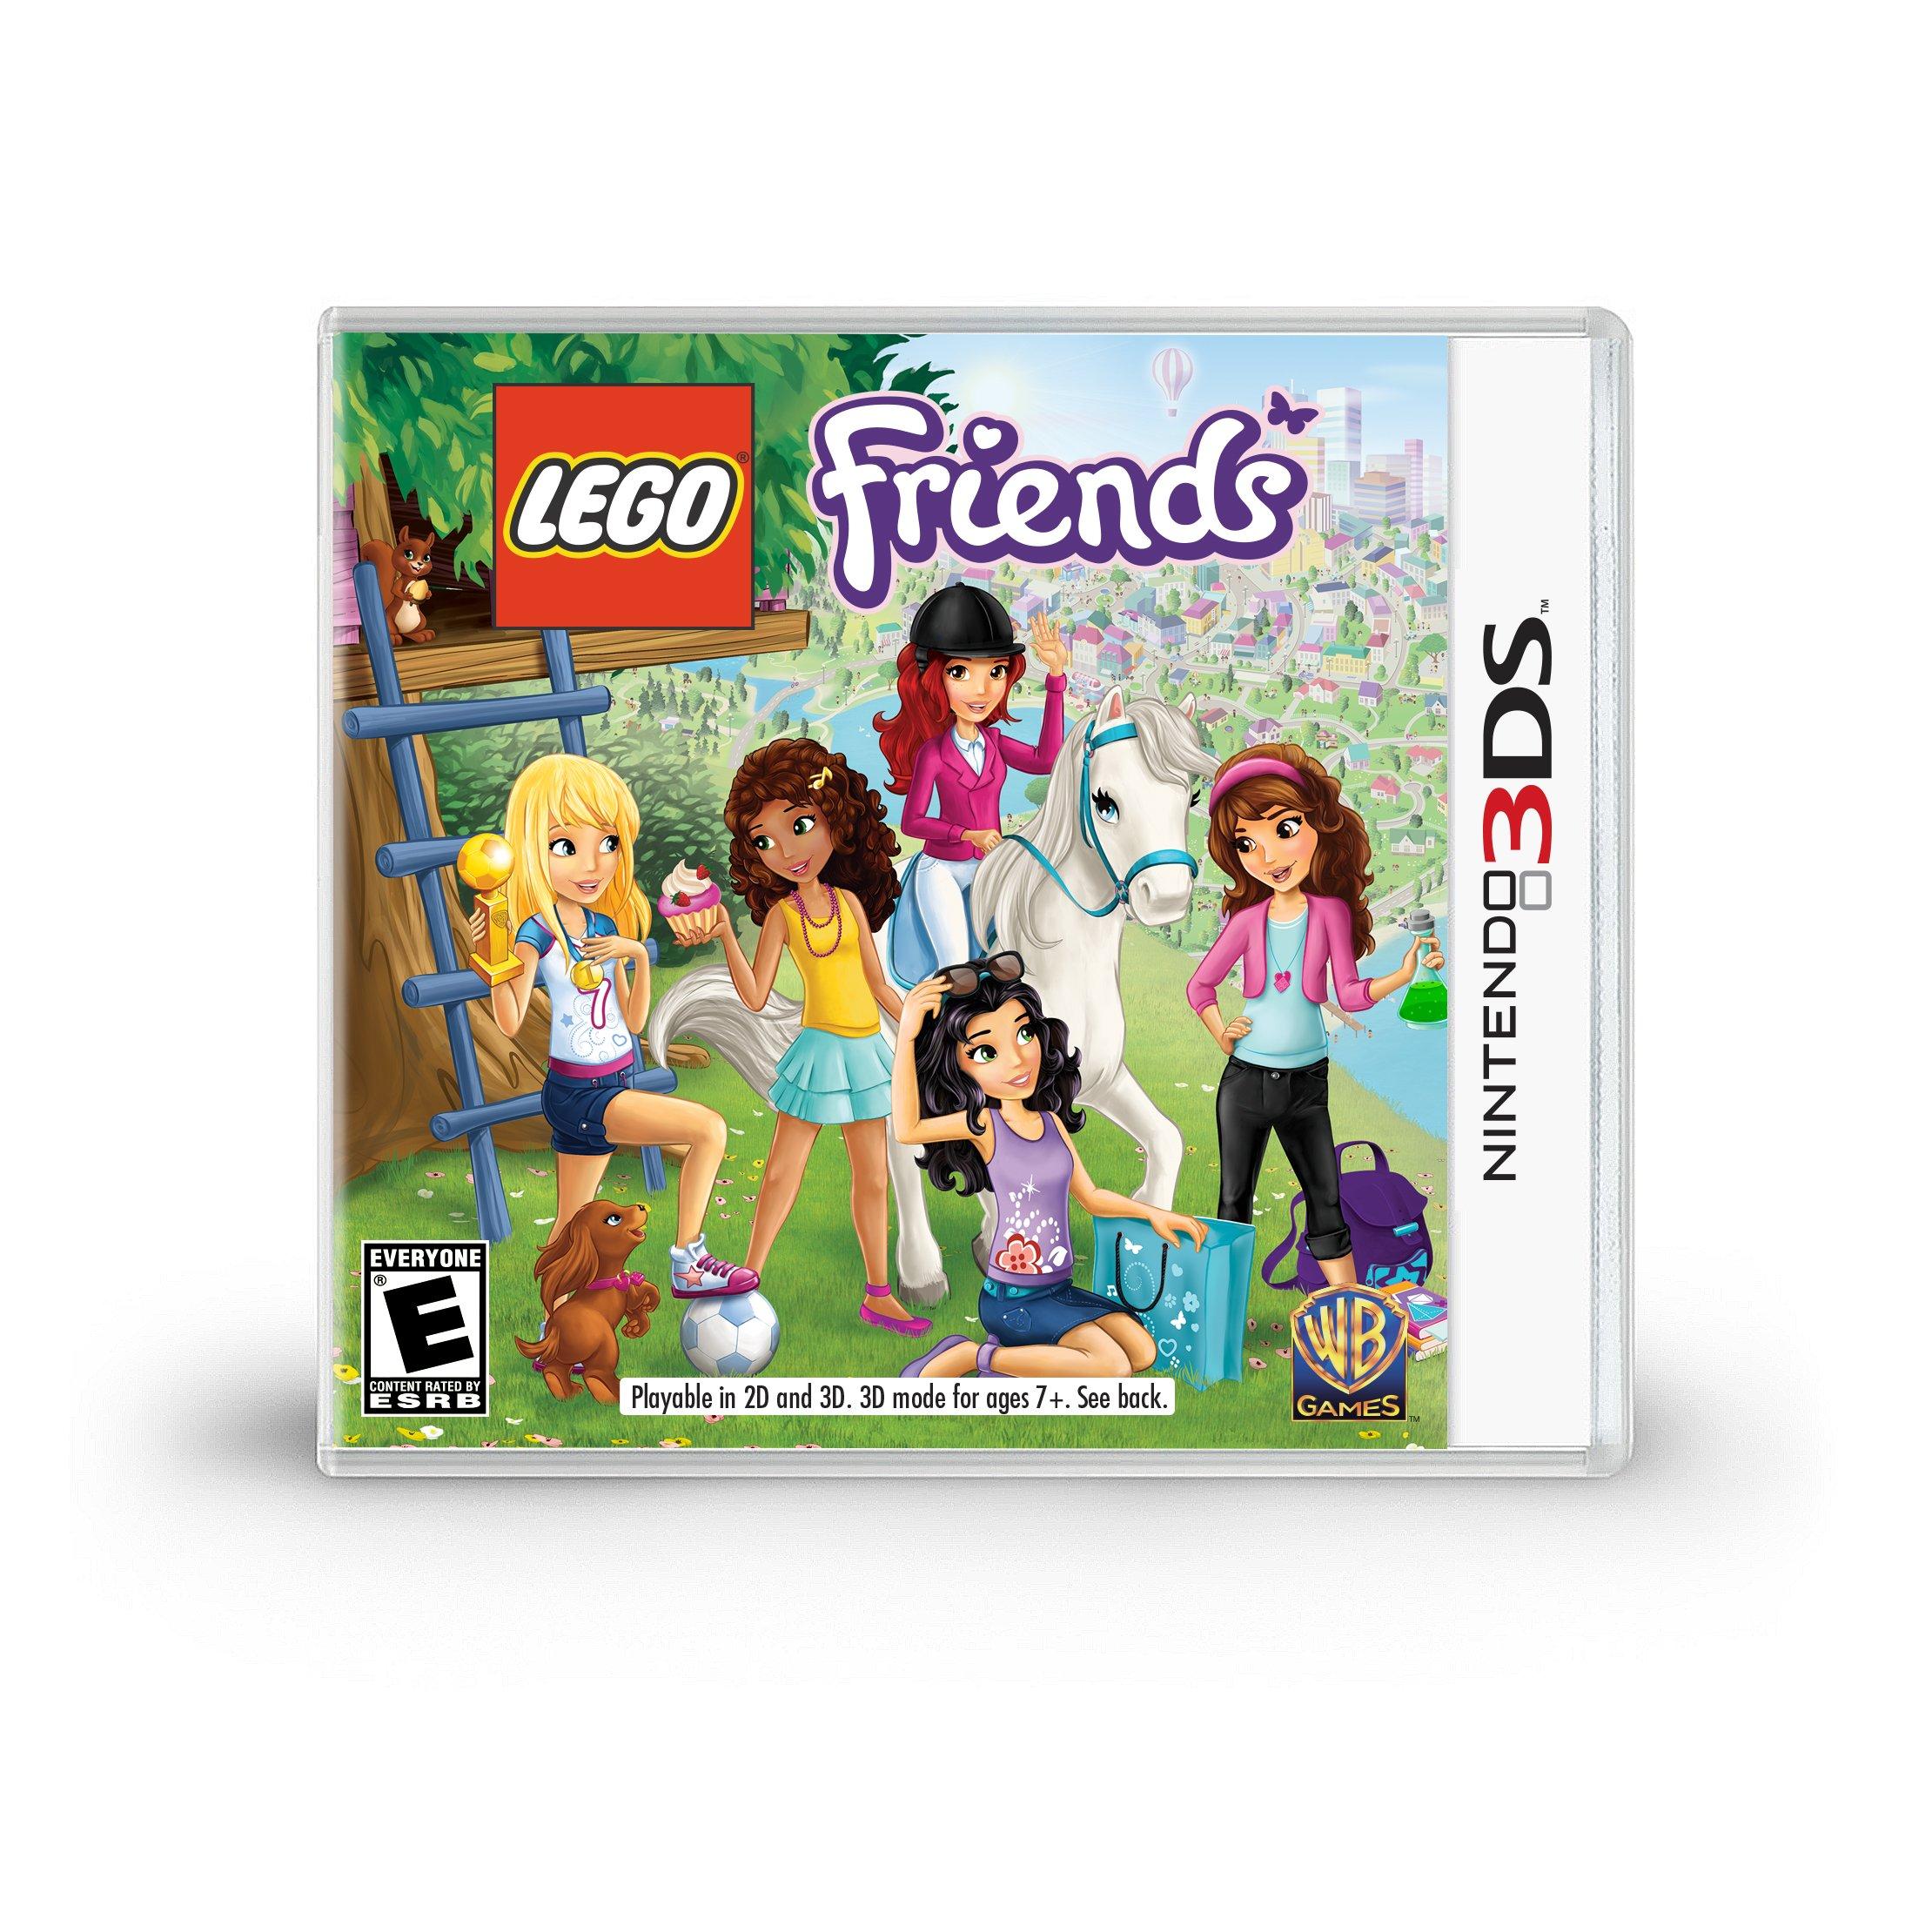 LEGO Friends - 3DS | Nintendo 3DS GameStop